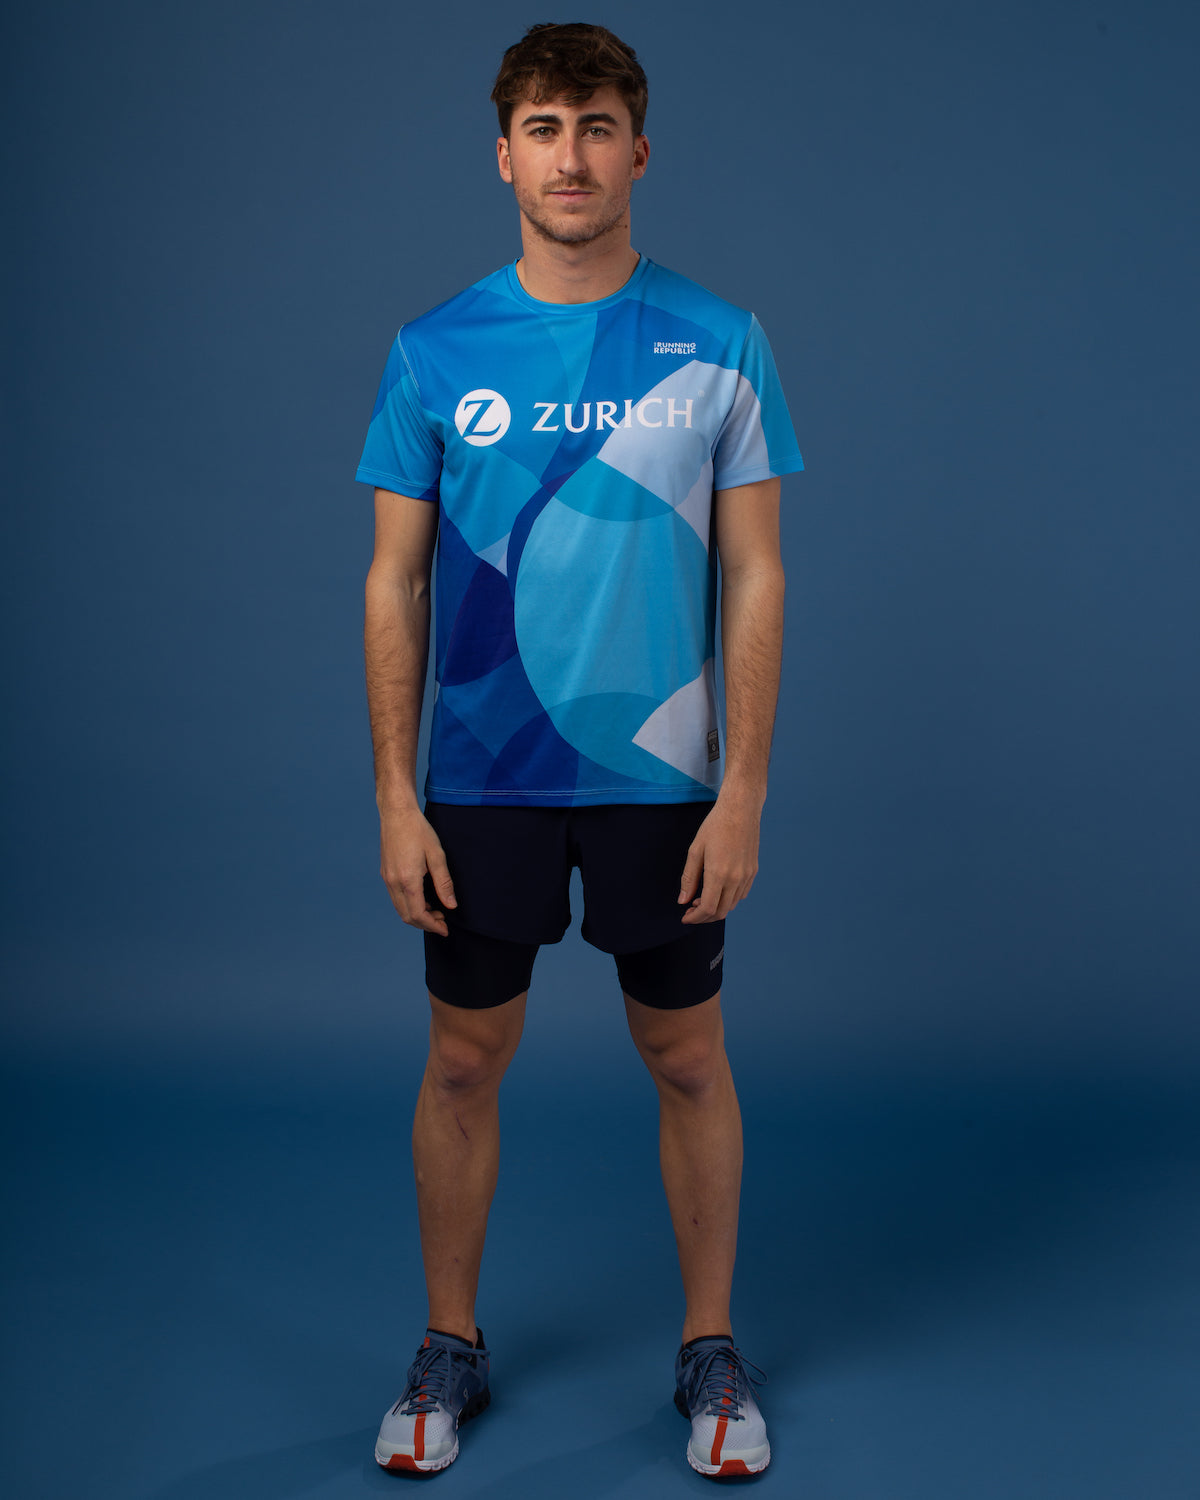 Camiseta Zurich Insurance Marathons men's performance